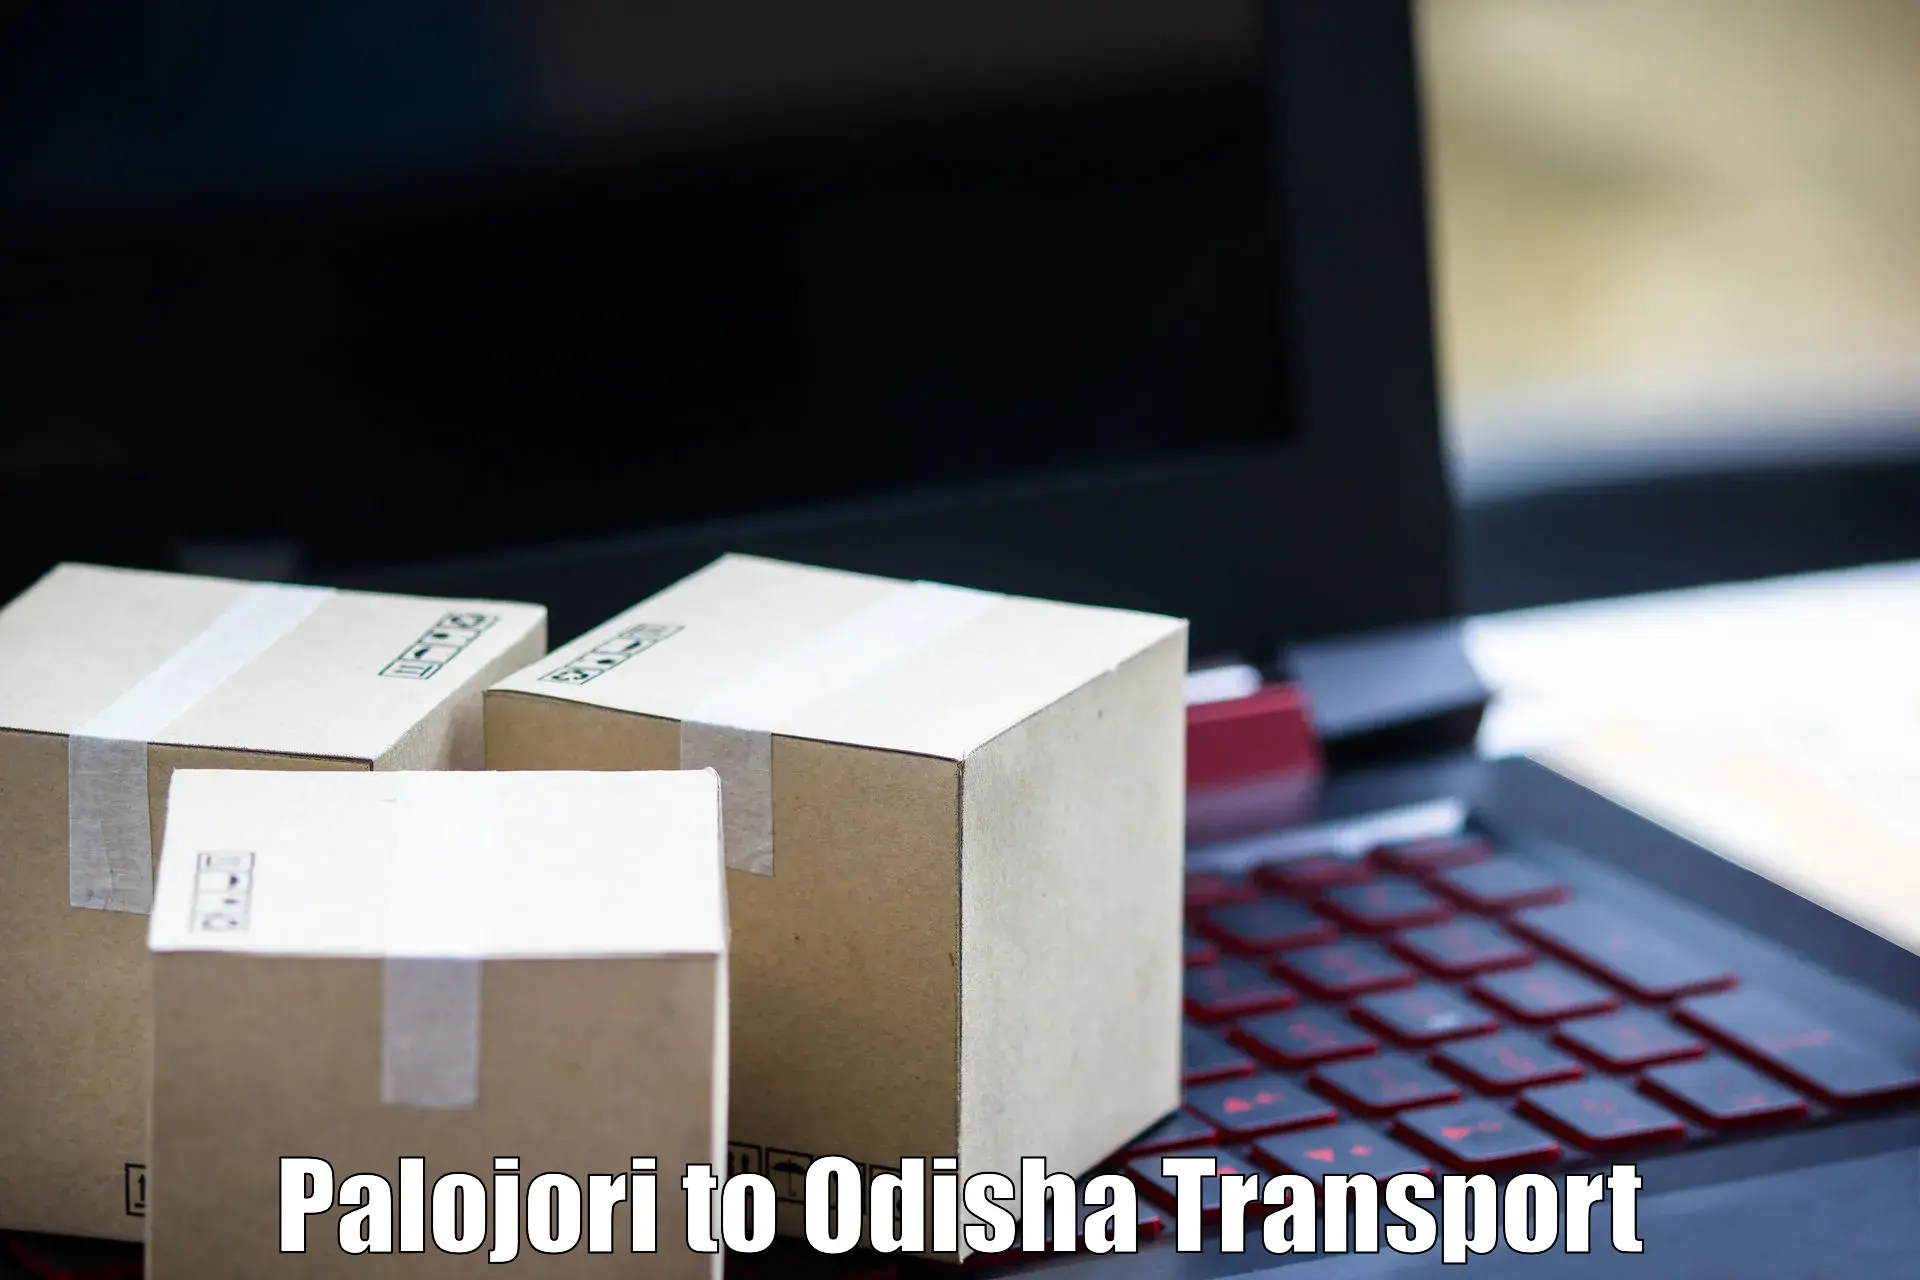 Pick up transport service Palojori to Binka